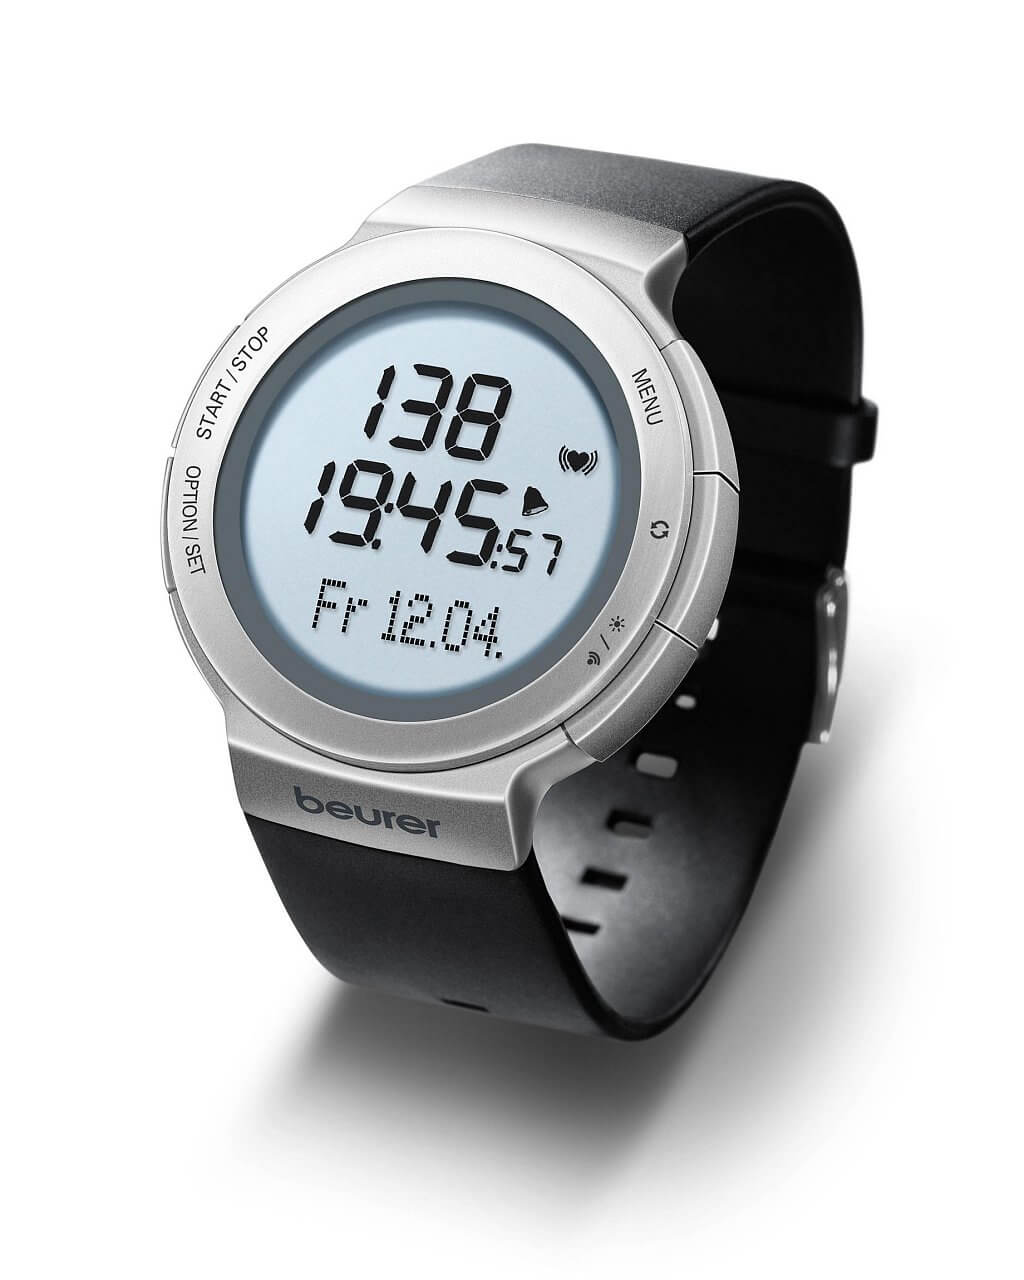 Sportovní hodinky s pulsoměrem Beurer PM80